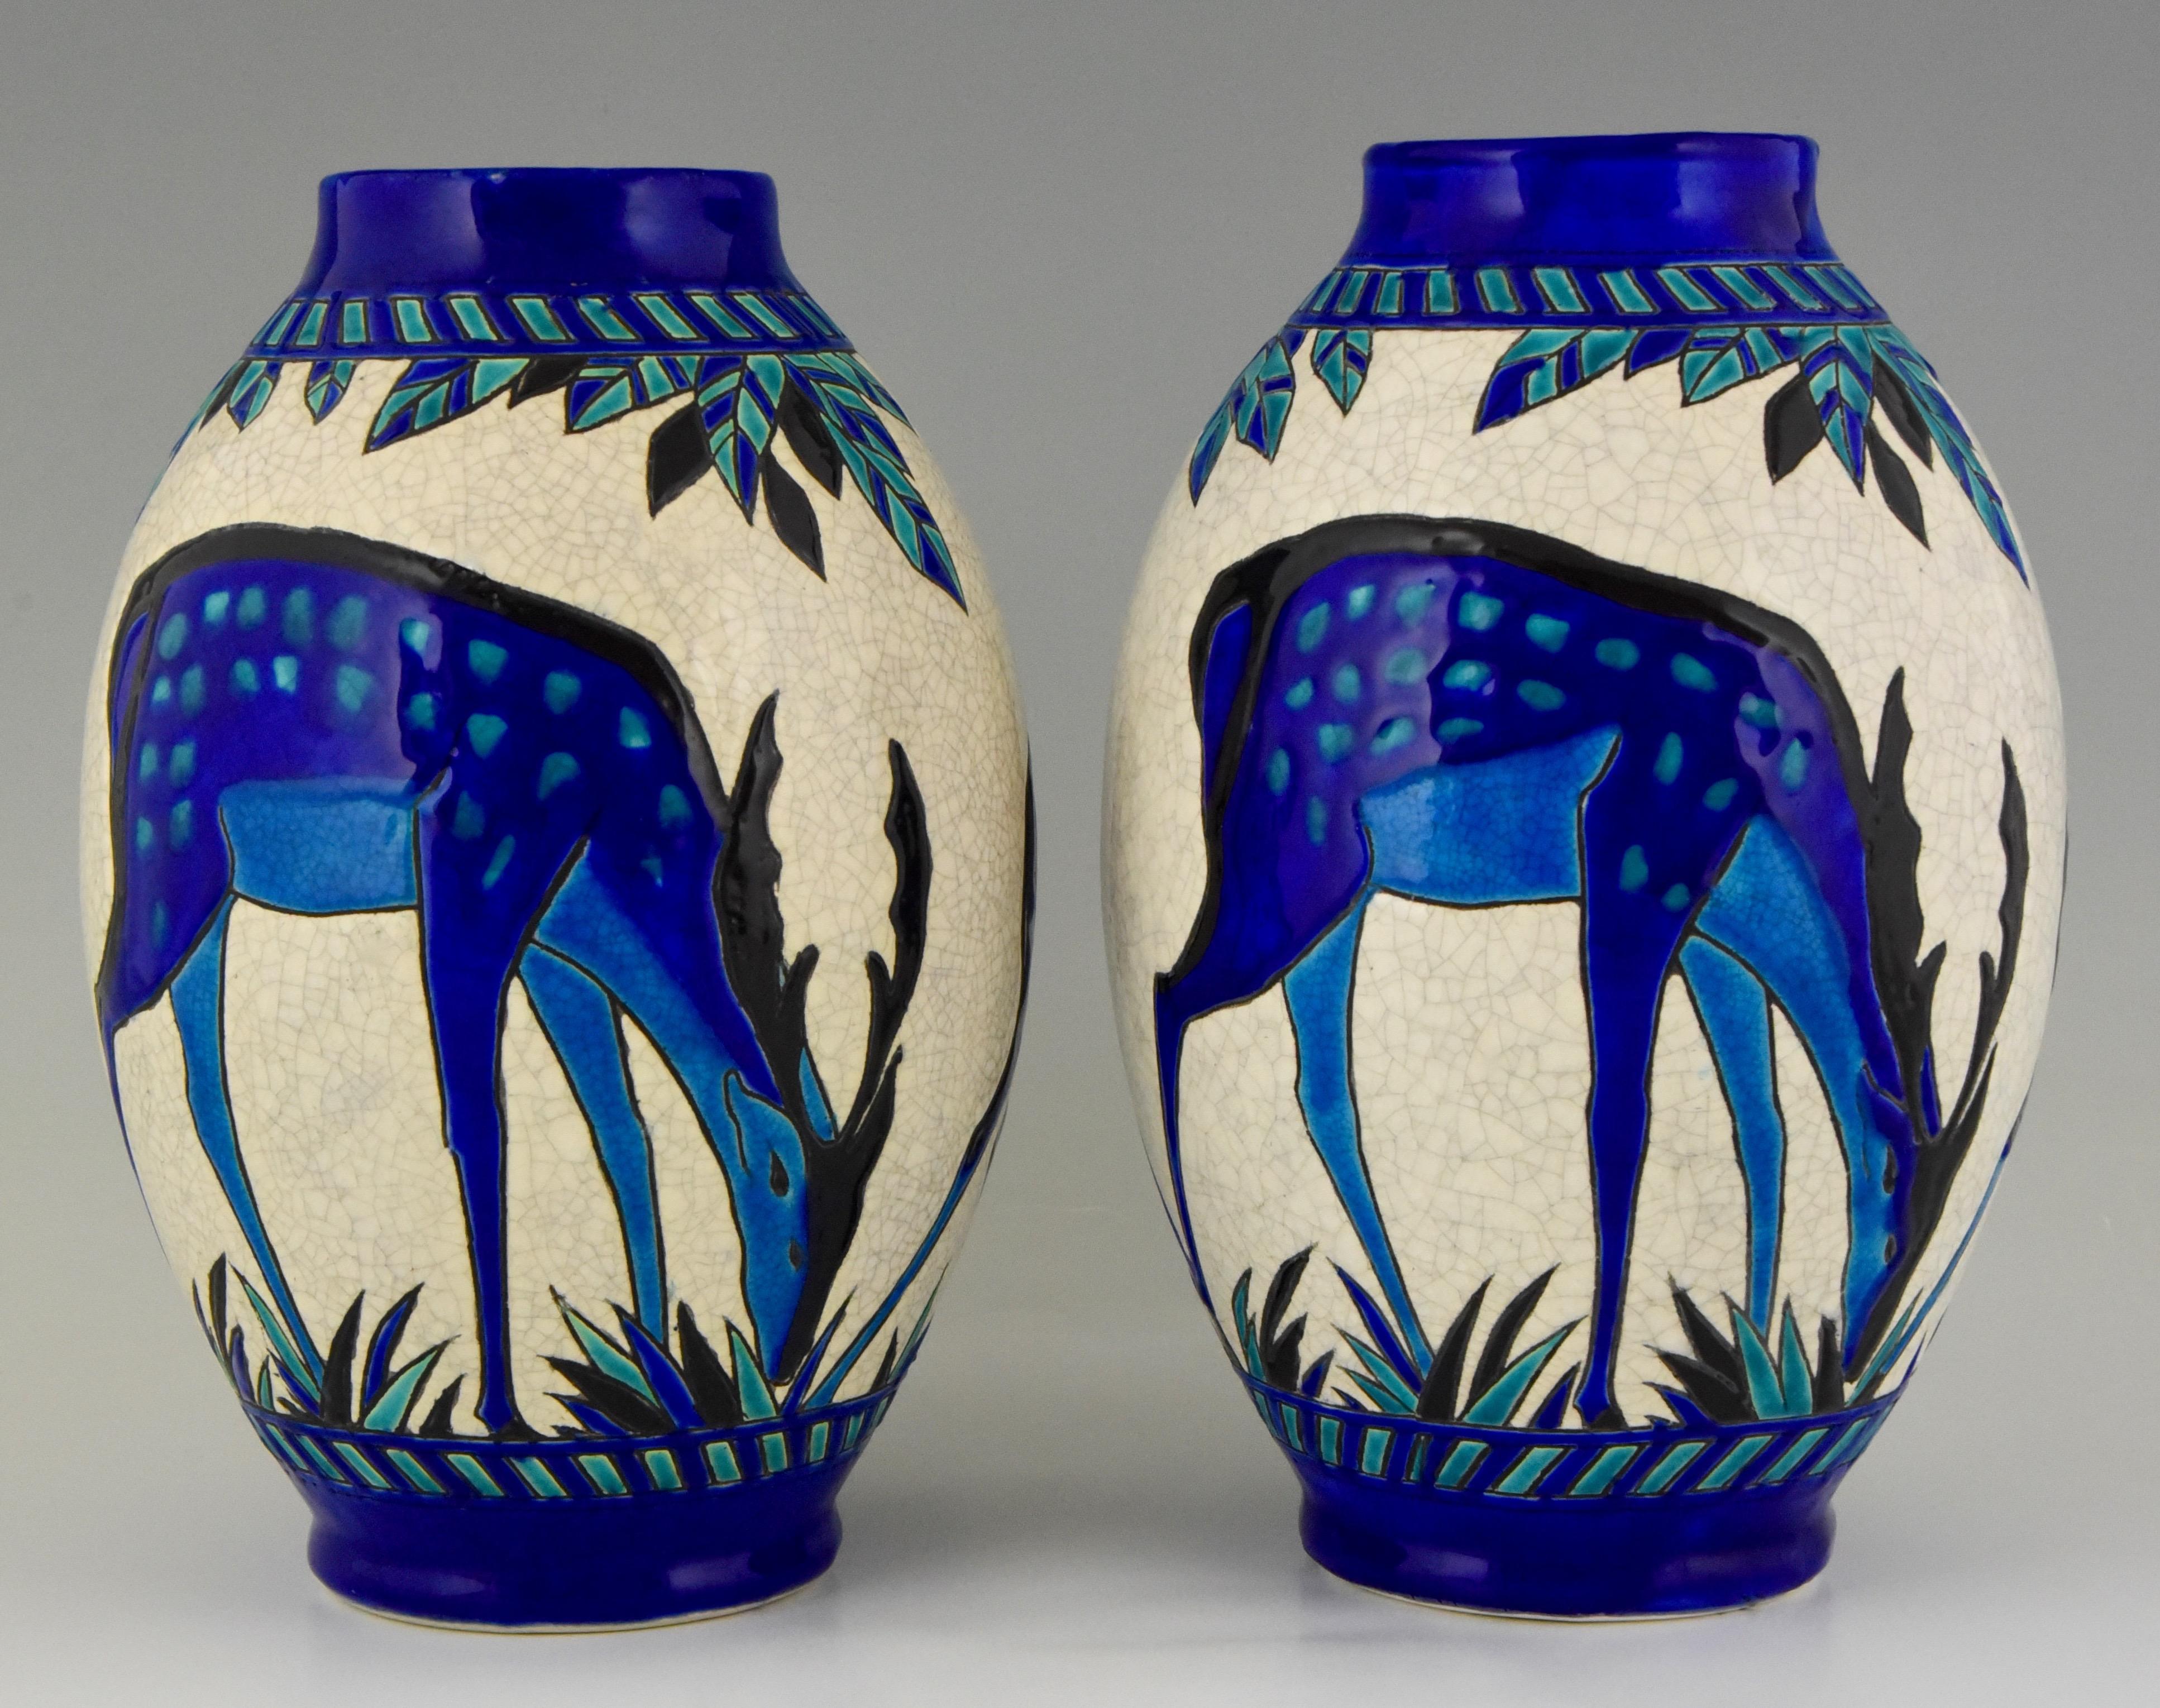 Belgian Art Deco Craquelé Ceramic Vases with Blue Deer Charles Catteau for Keramis, Pair